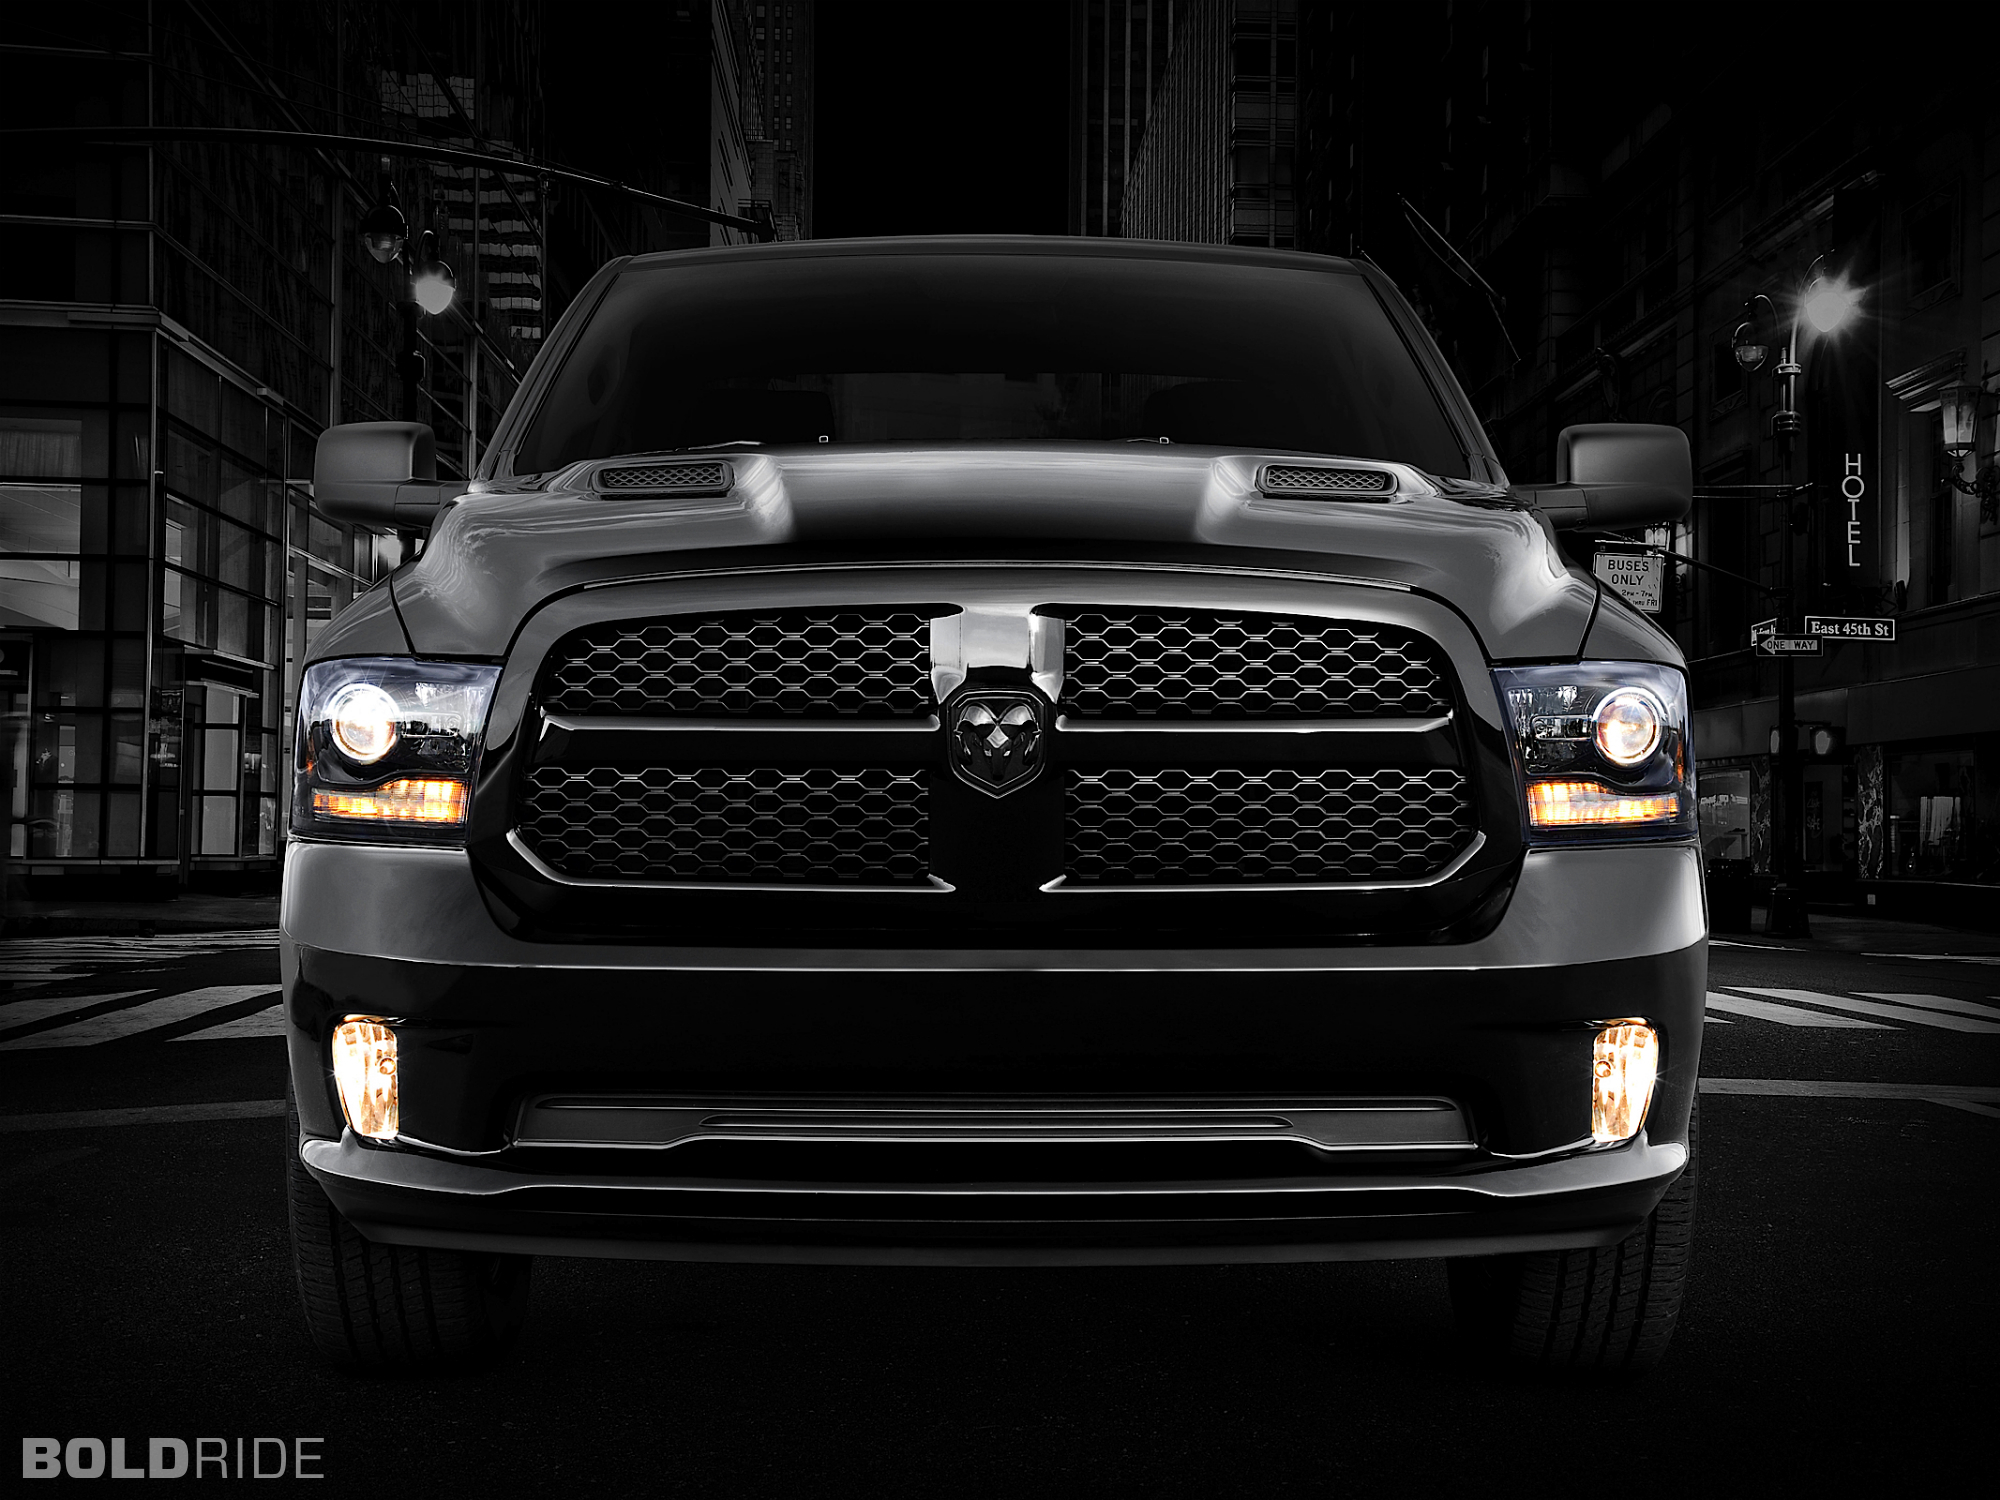 2013, Dodge, Ram, 1500, Black, Express, Pickup, Supertruck, Truck, Muscle Wallpaper